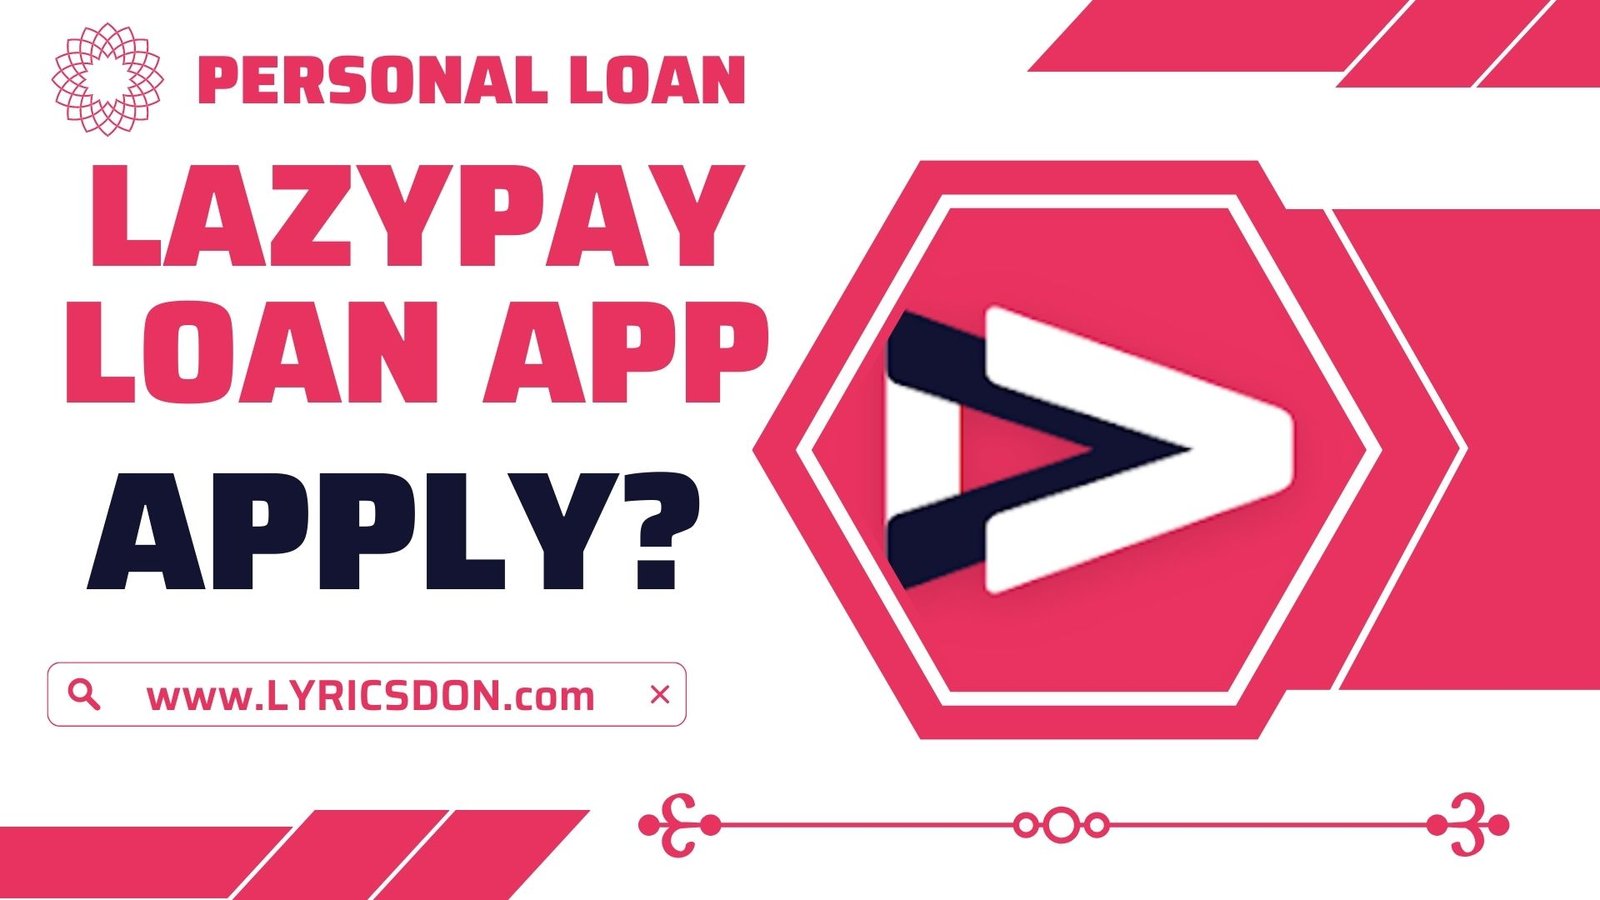 LazyPay Loan App से लोन कैसे लें?